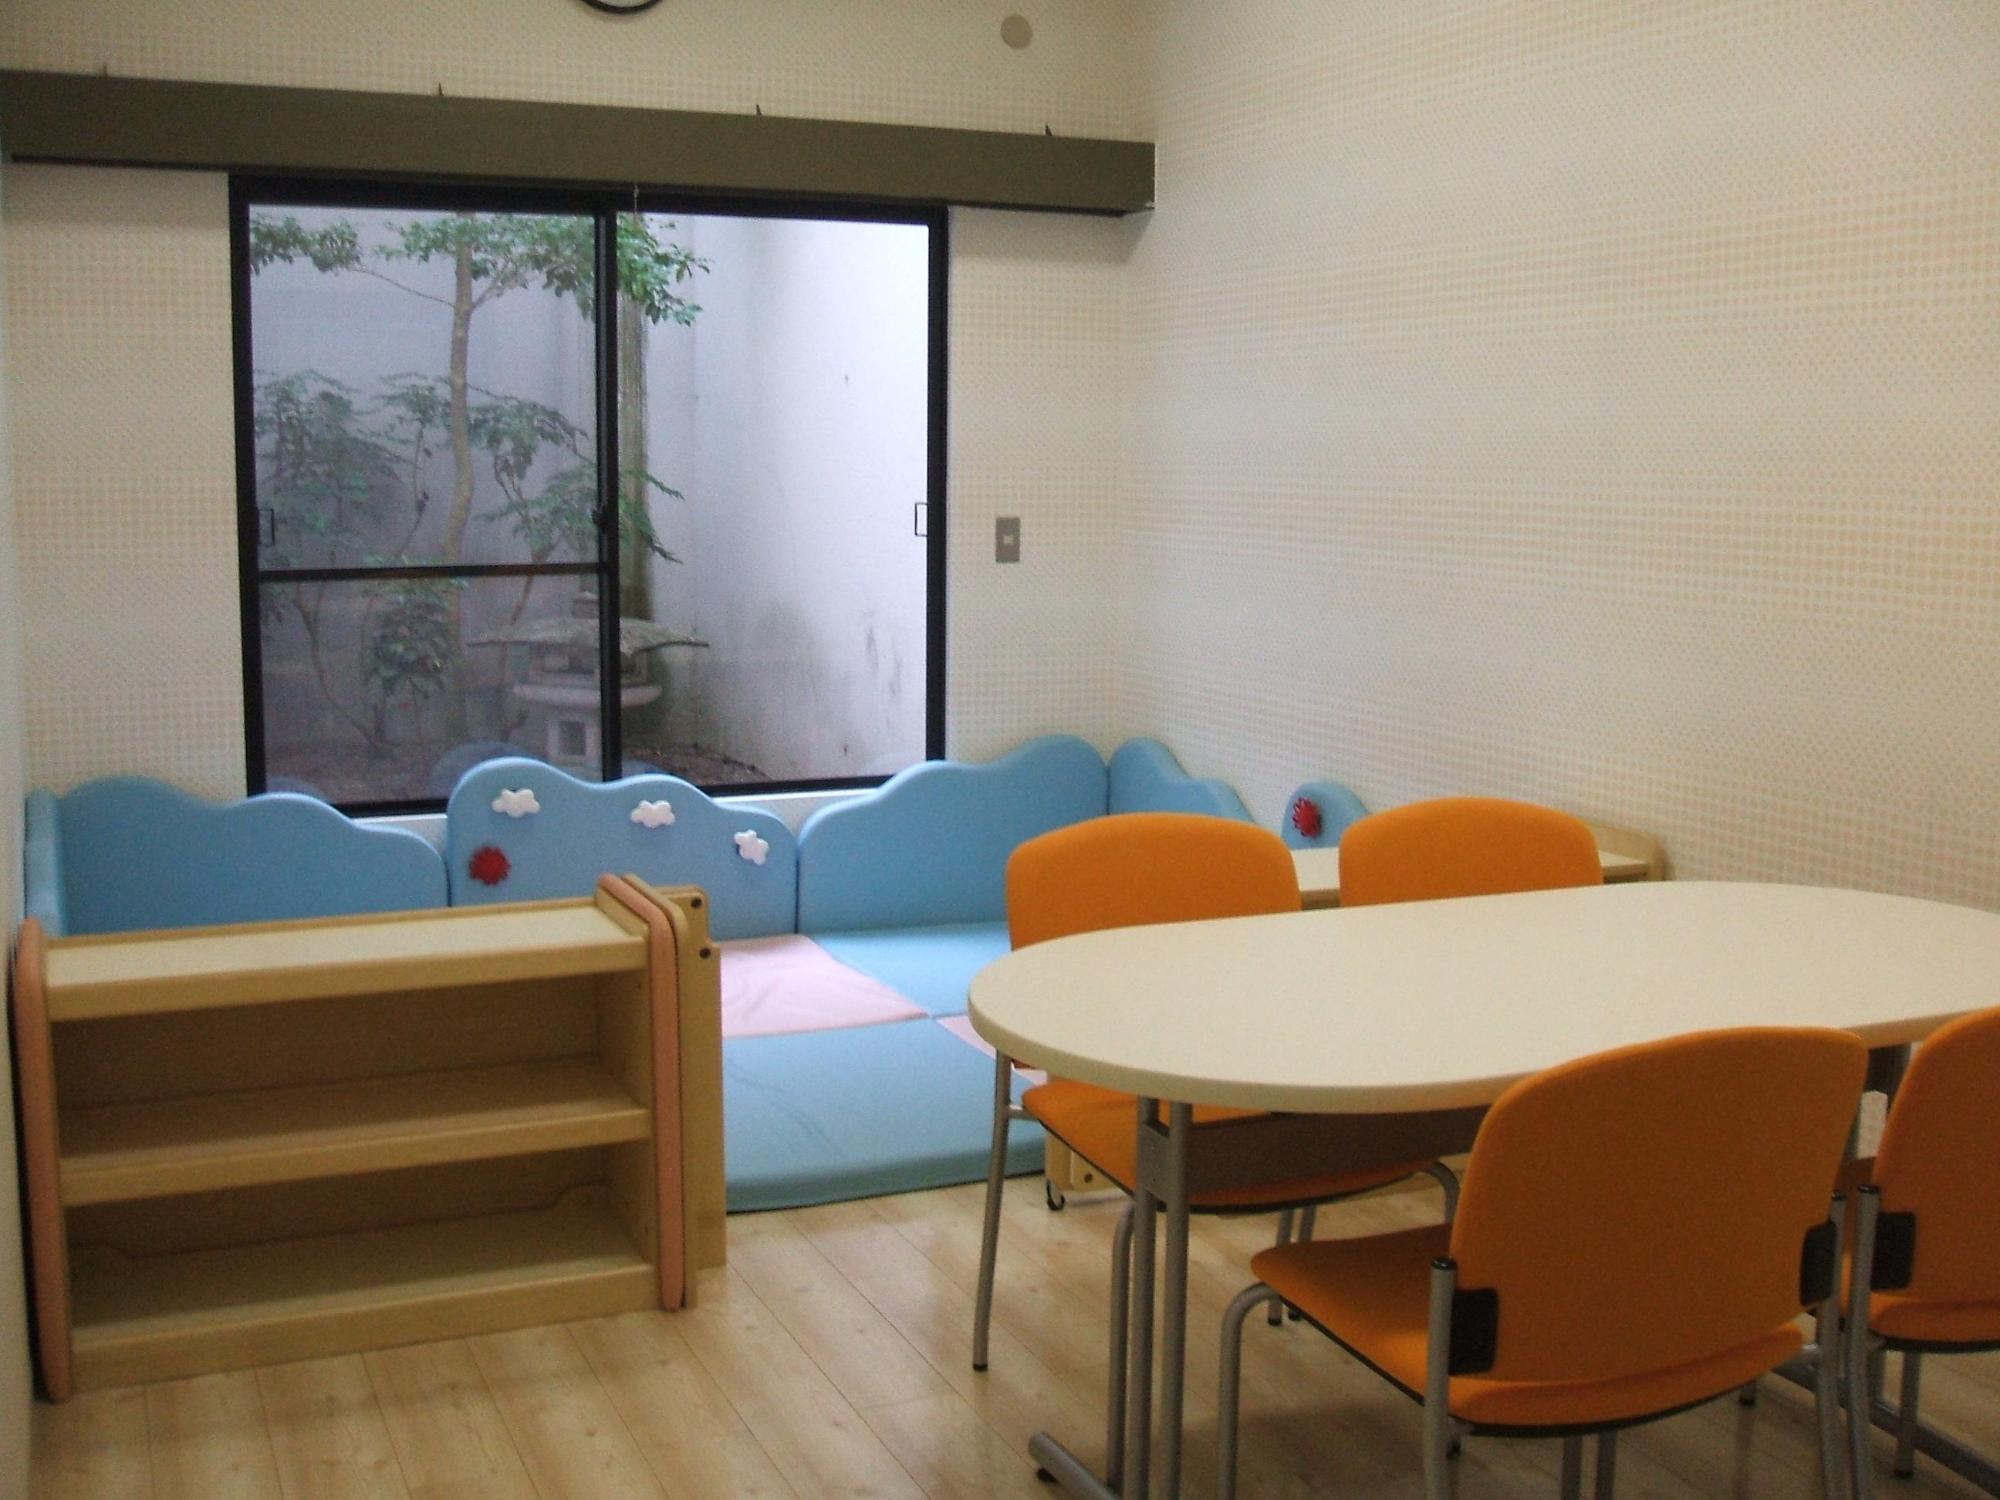 手前にオレンジ色の椅子と木製のテーブルが設置されており、奥には水色のマットのキッズスペースと靴箱が設置されているネウボラ相談室の写真